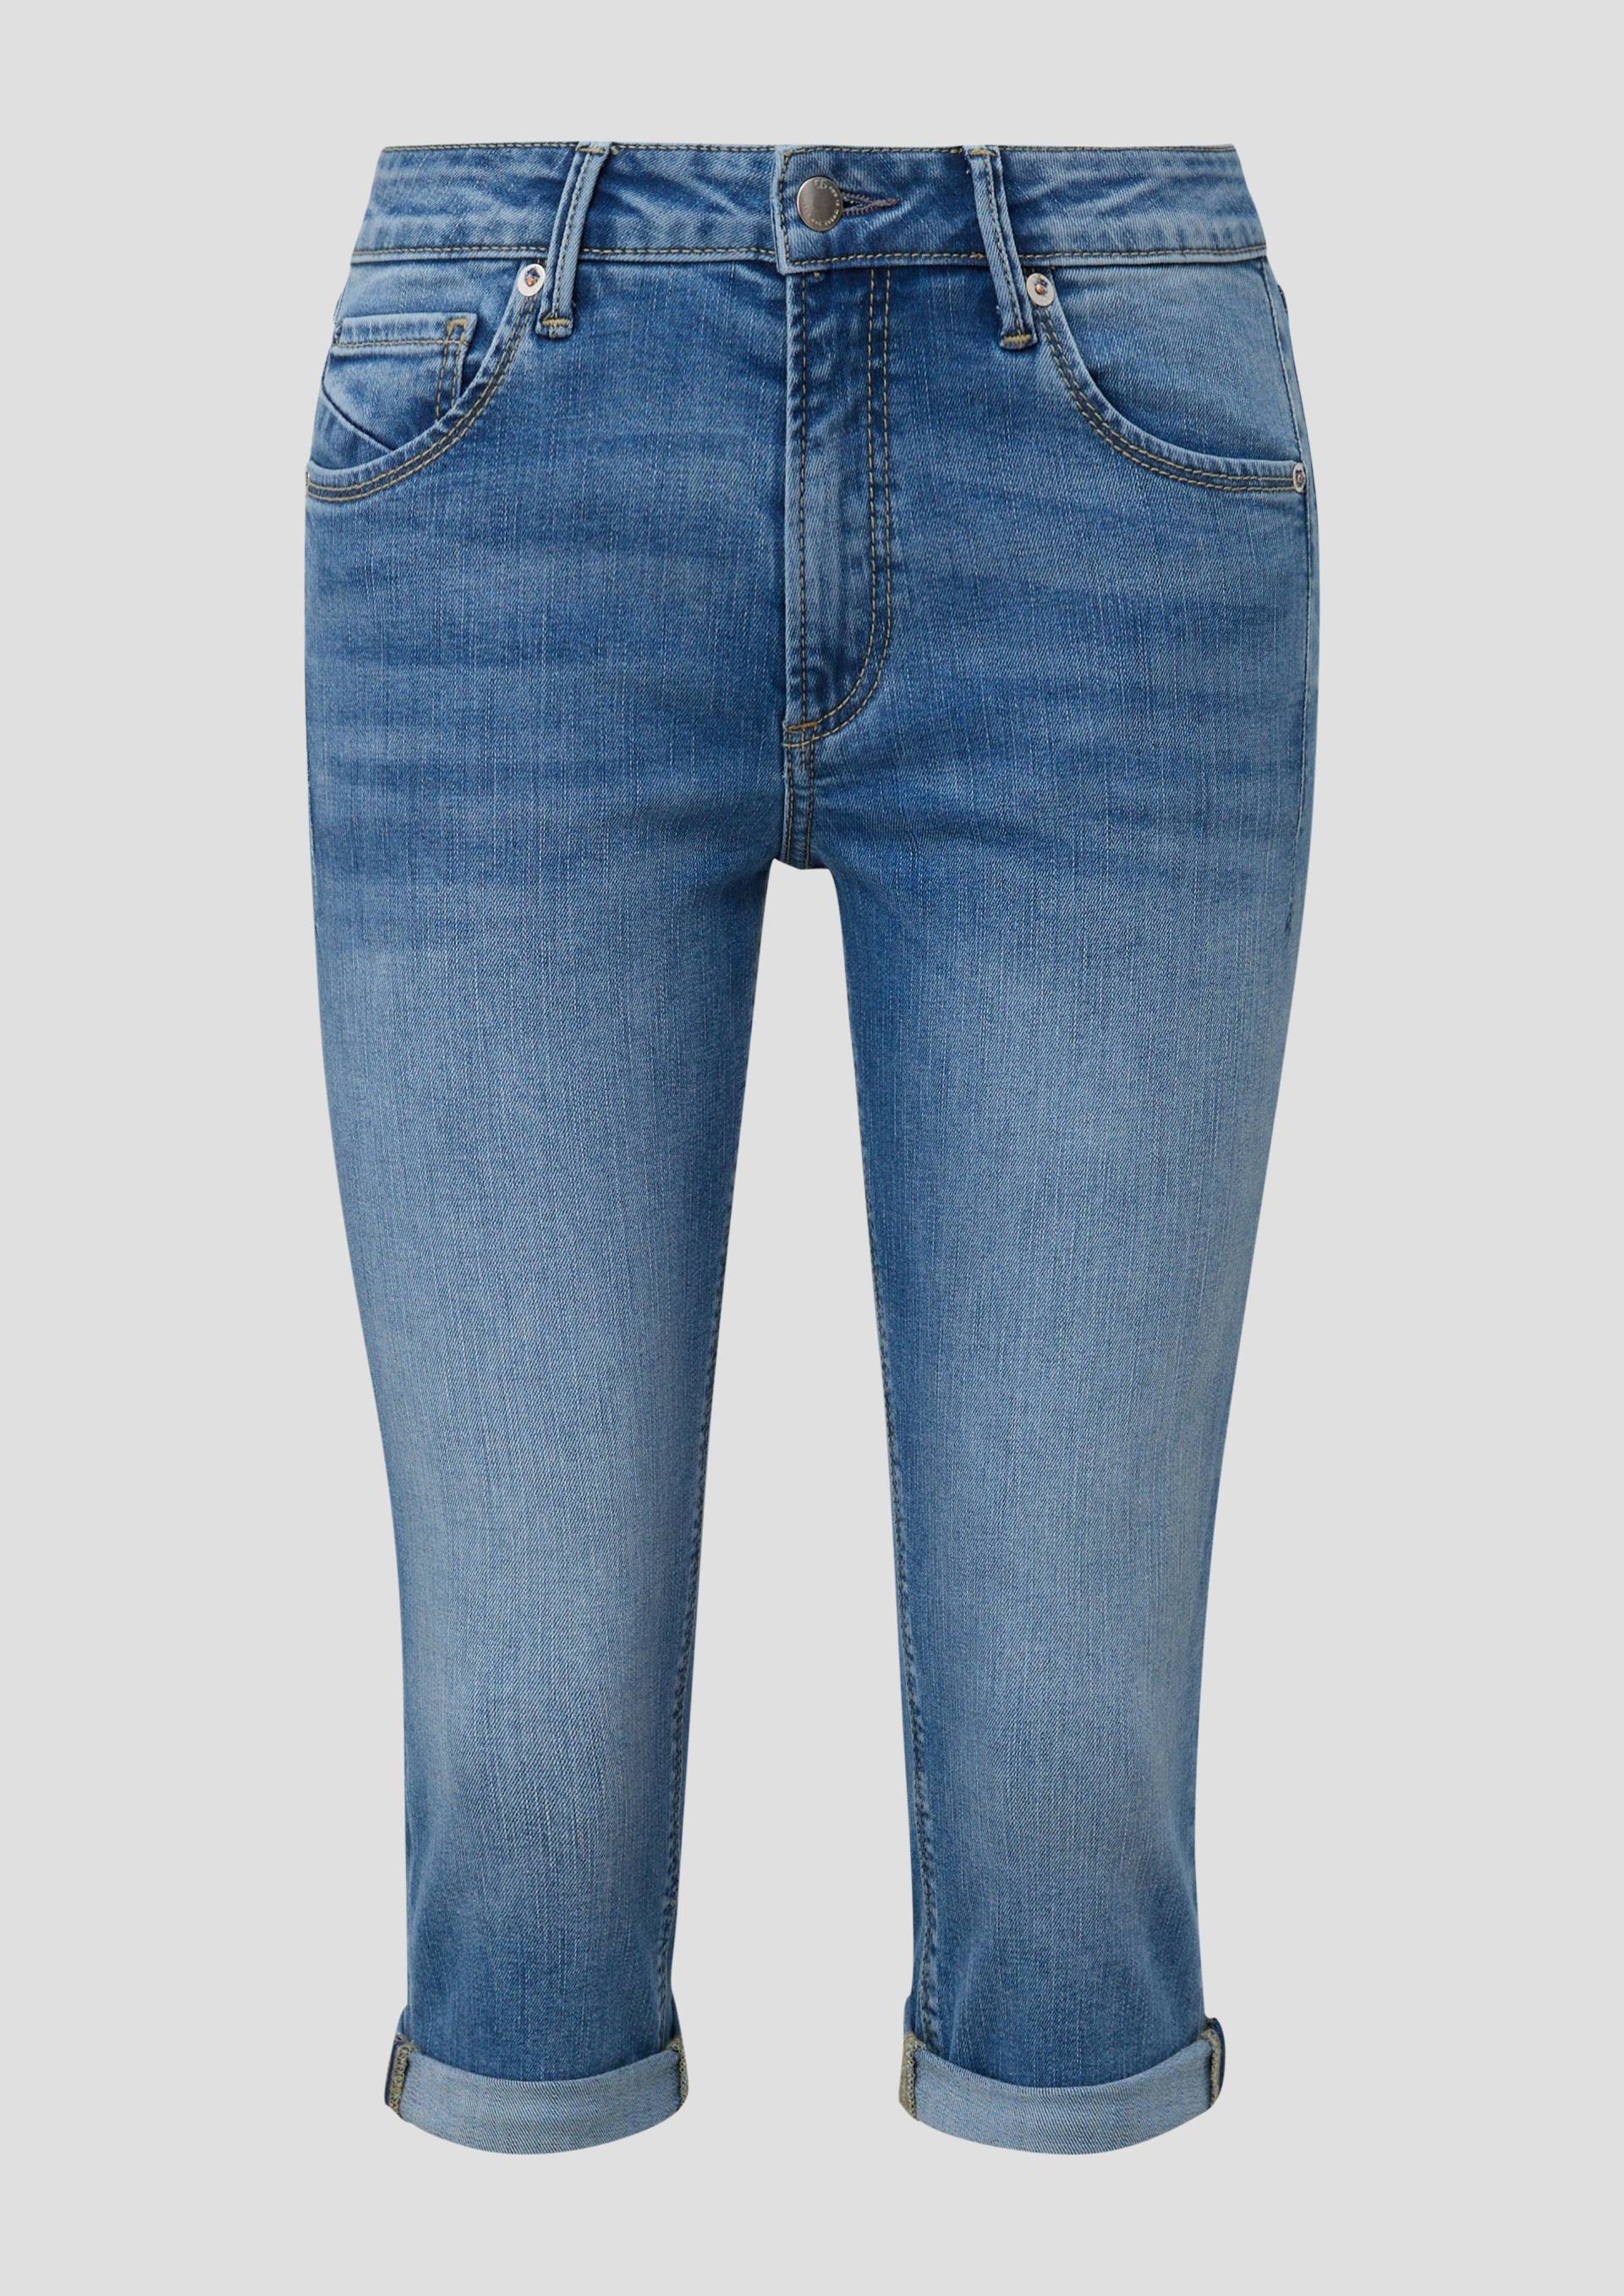 QS - Capri-Jeans Catie / Slim Fit / Mid Rise / Slim Leg, Damen, blau von QS